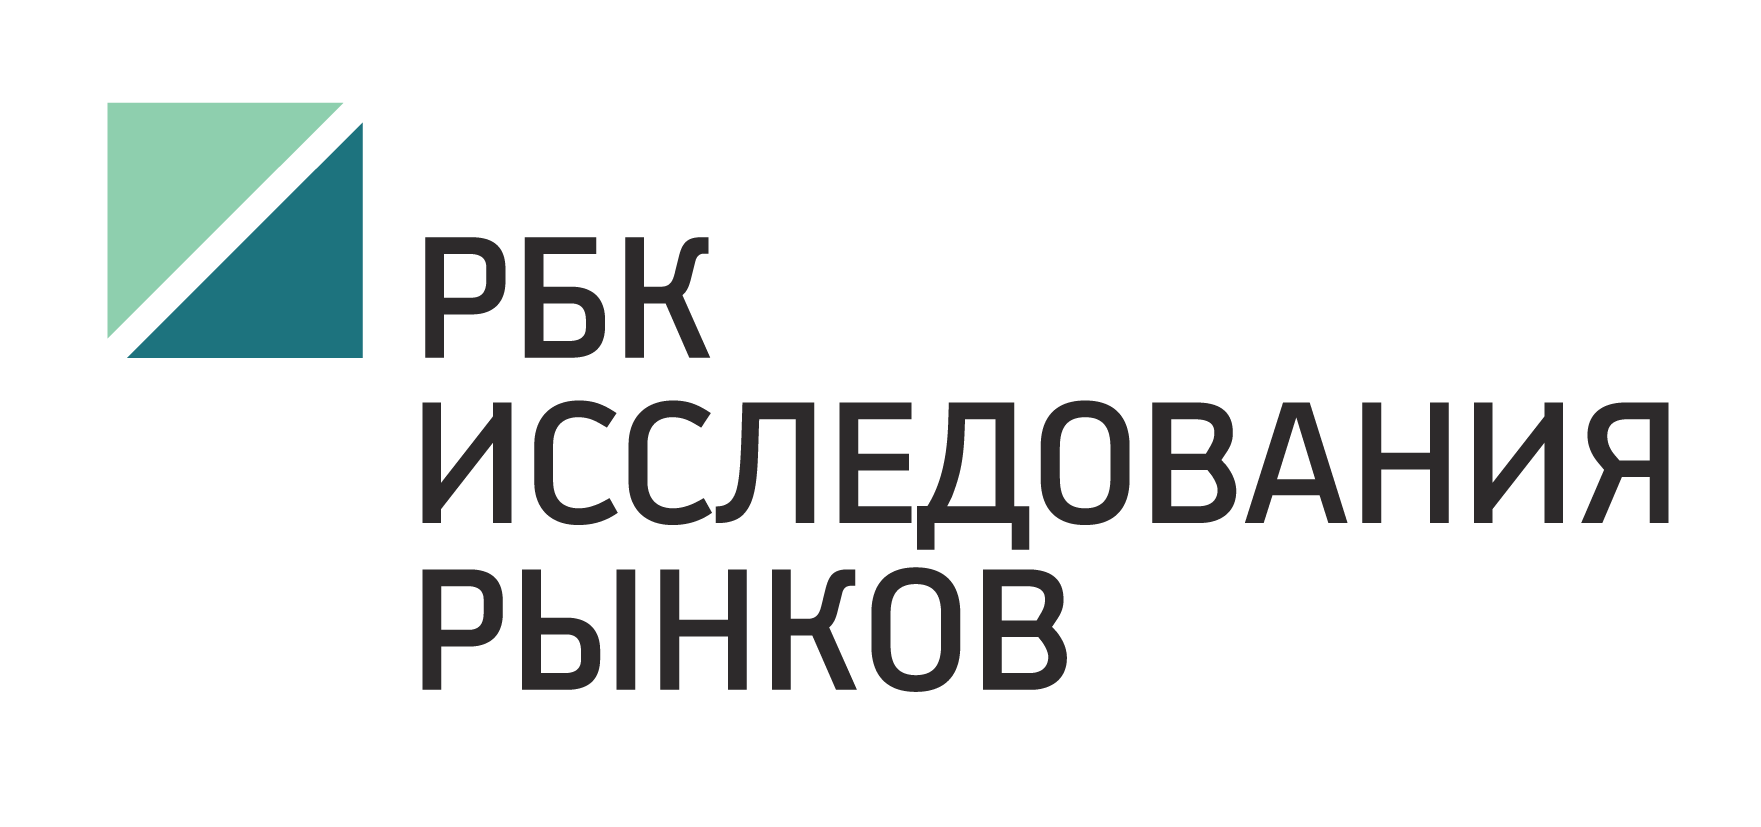 Https quote rbc. РБК исследования рынков лого. РБК исследования. РБК эмблема. Логотип русской буровой компании.